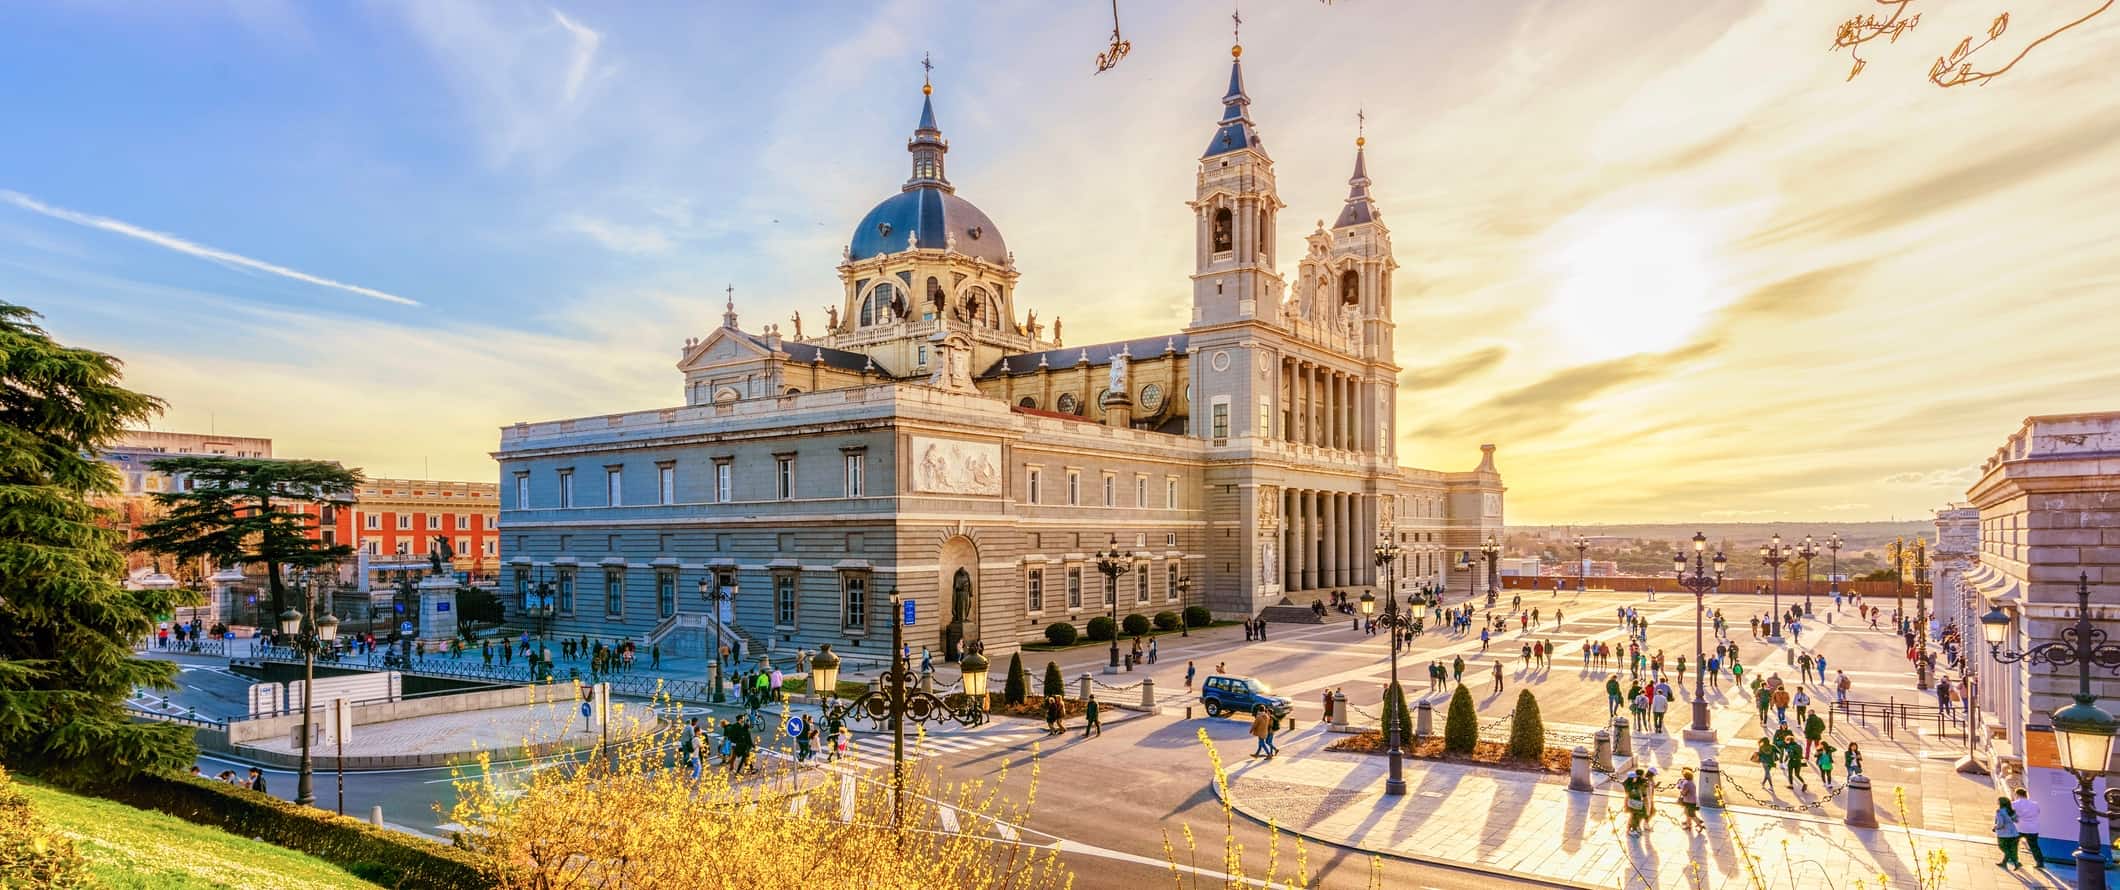 Impressionante arquitetura histórica de Madrid, Espanha, ao lado de uma grande praça durante o pôr do sol.